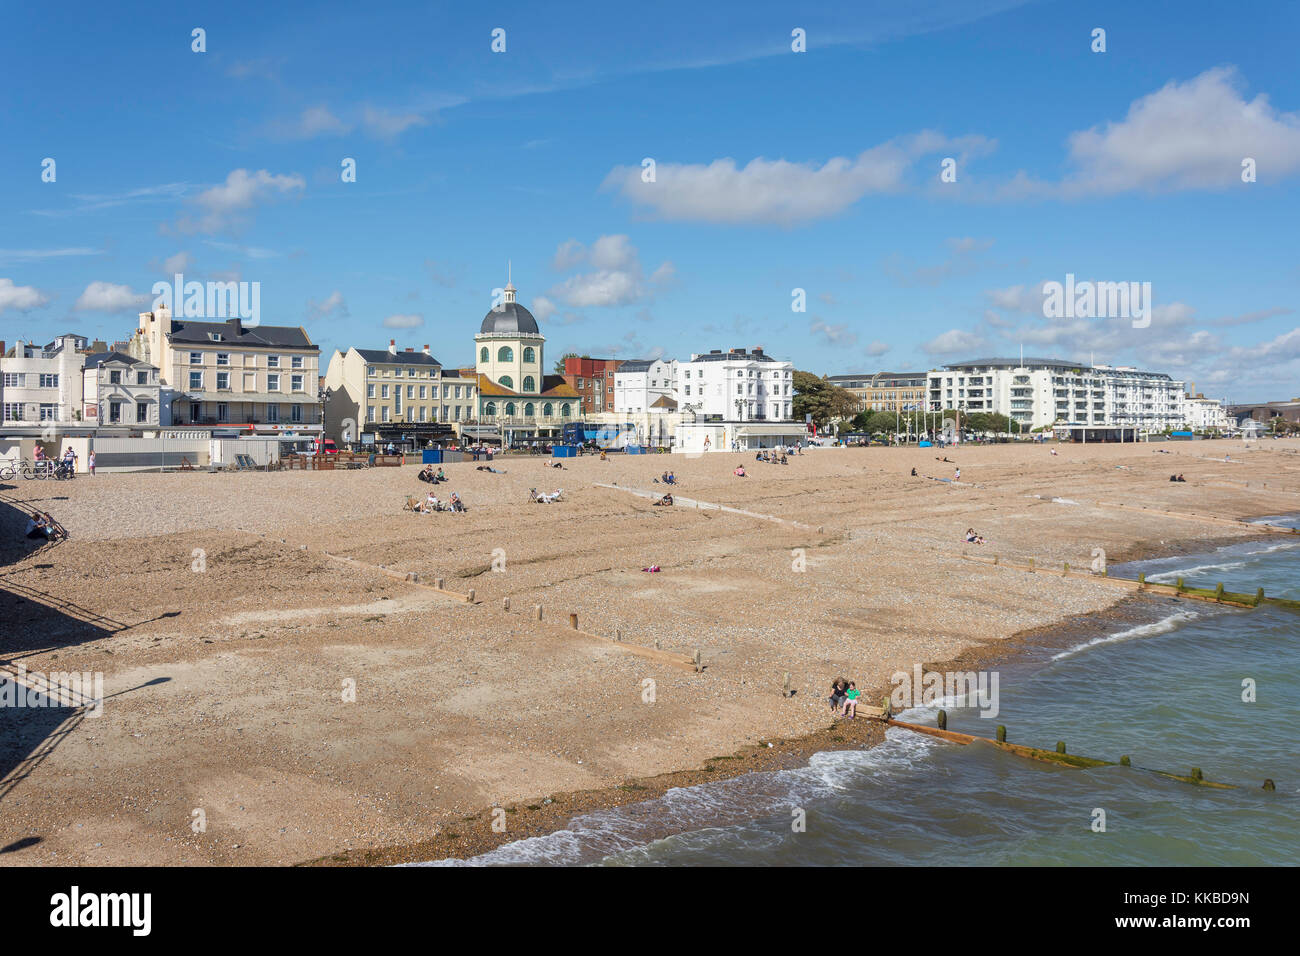 Strand und Promenade von Worthing Pier, Worthing, West Sussex, England, Vereinigtes Königreich Stockfoto